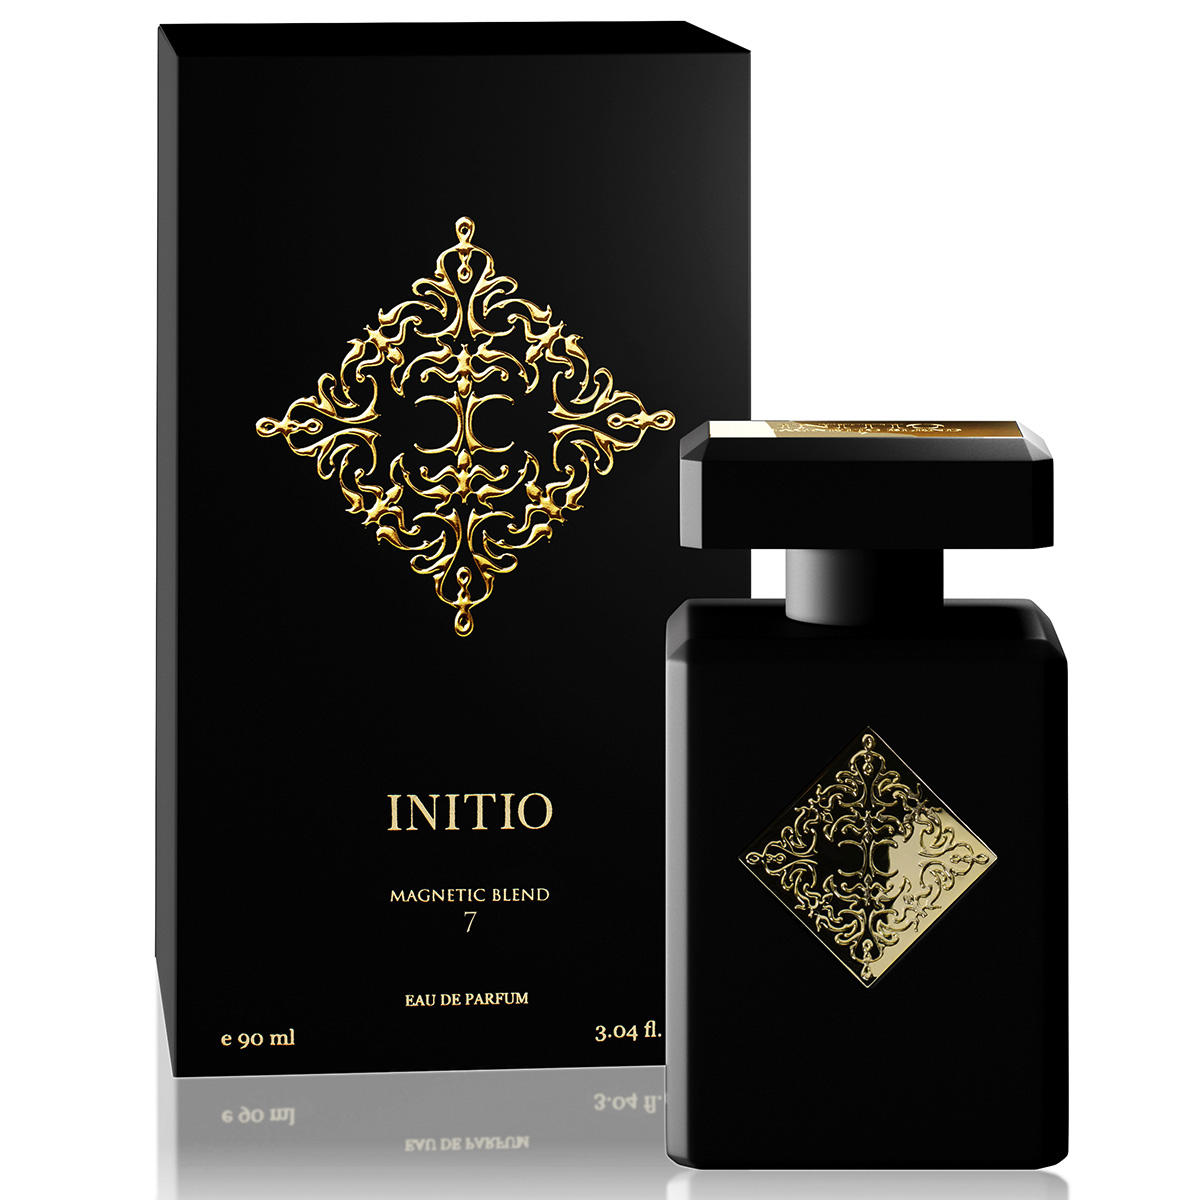 INITIO The Magnetic Blends Magnetic Blend 7 Eau de Parfum 90 ml - 2